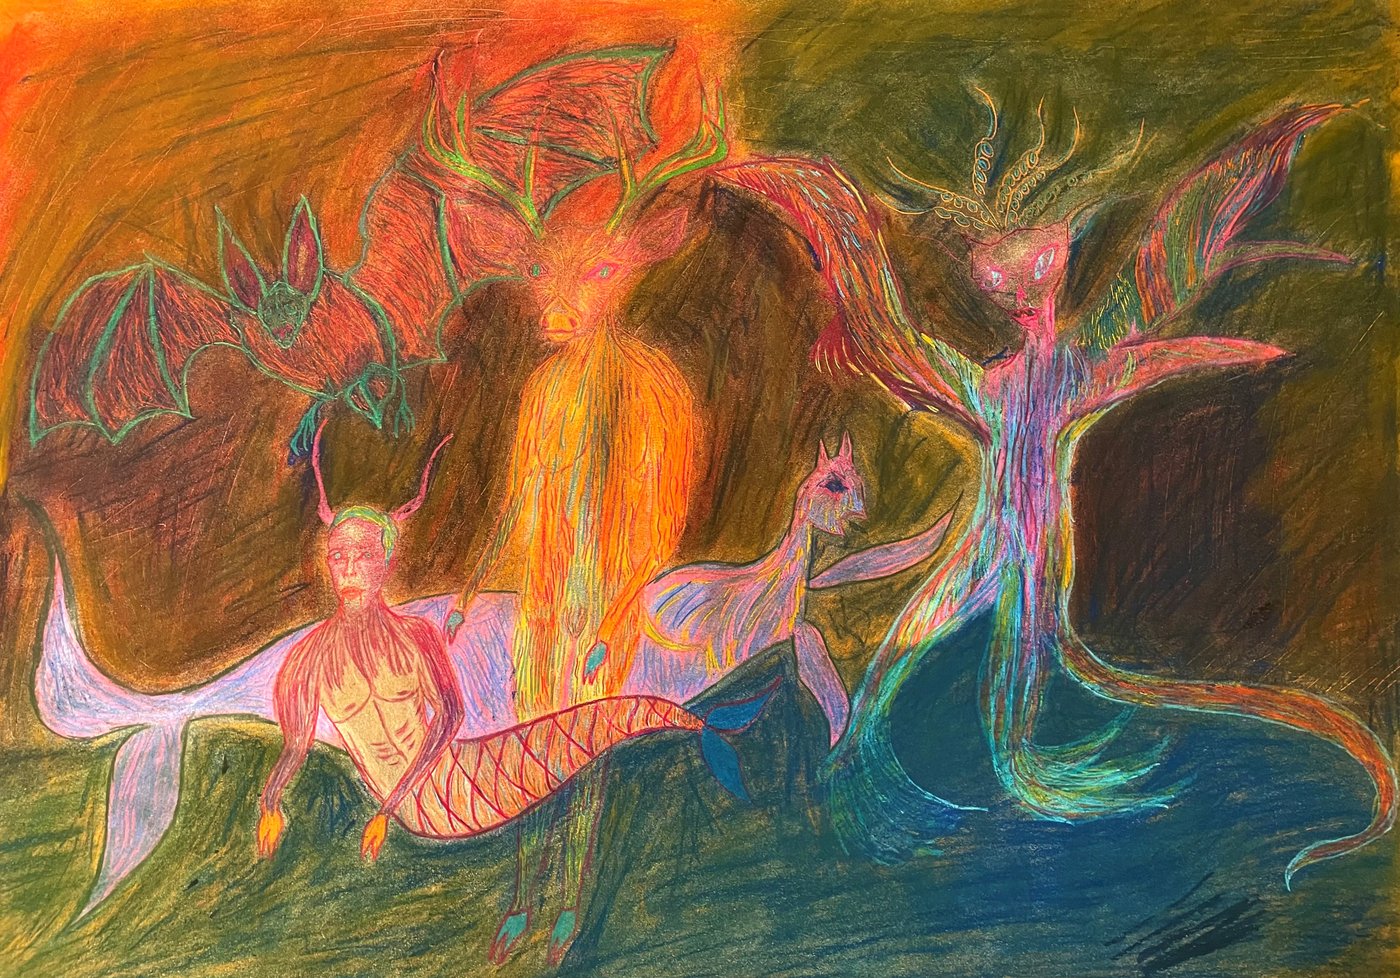 Buntstiftzeichnung in orange, grün und blau Tönen mit Figuren wie eine Fledermaus, ein Meermann, ein menschlicher Körper mit Hirschkopf, eine Wesen mit Tentakeln und ein Wal-ähnliches Lebewesen